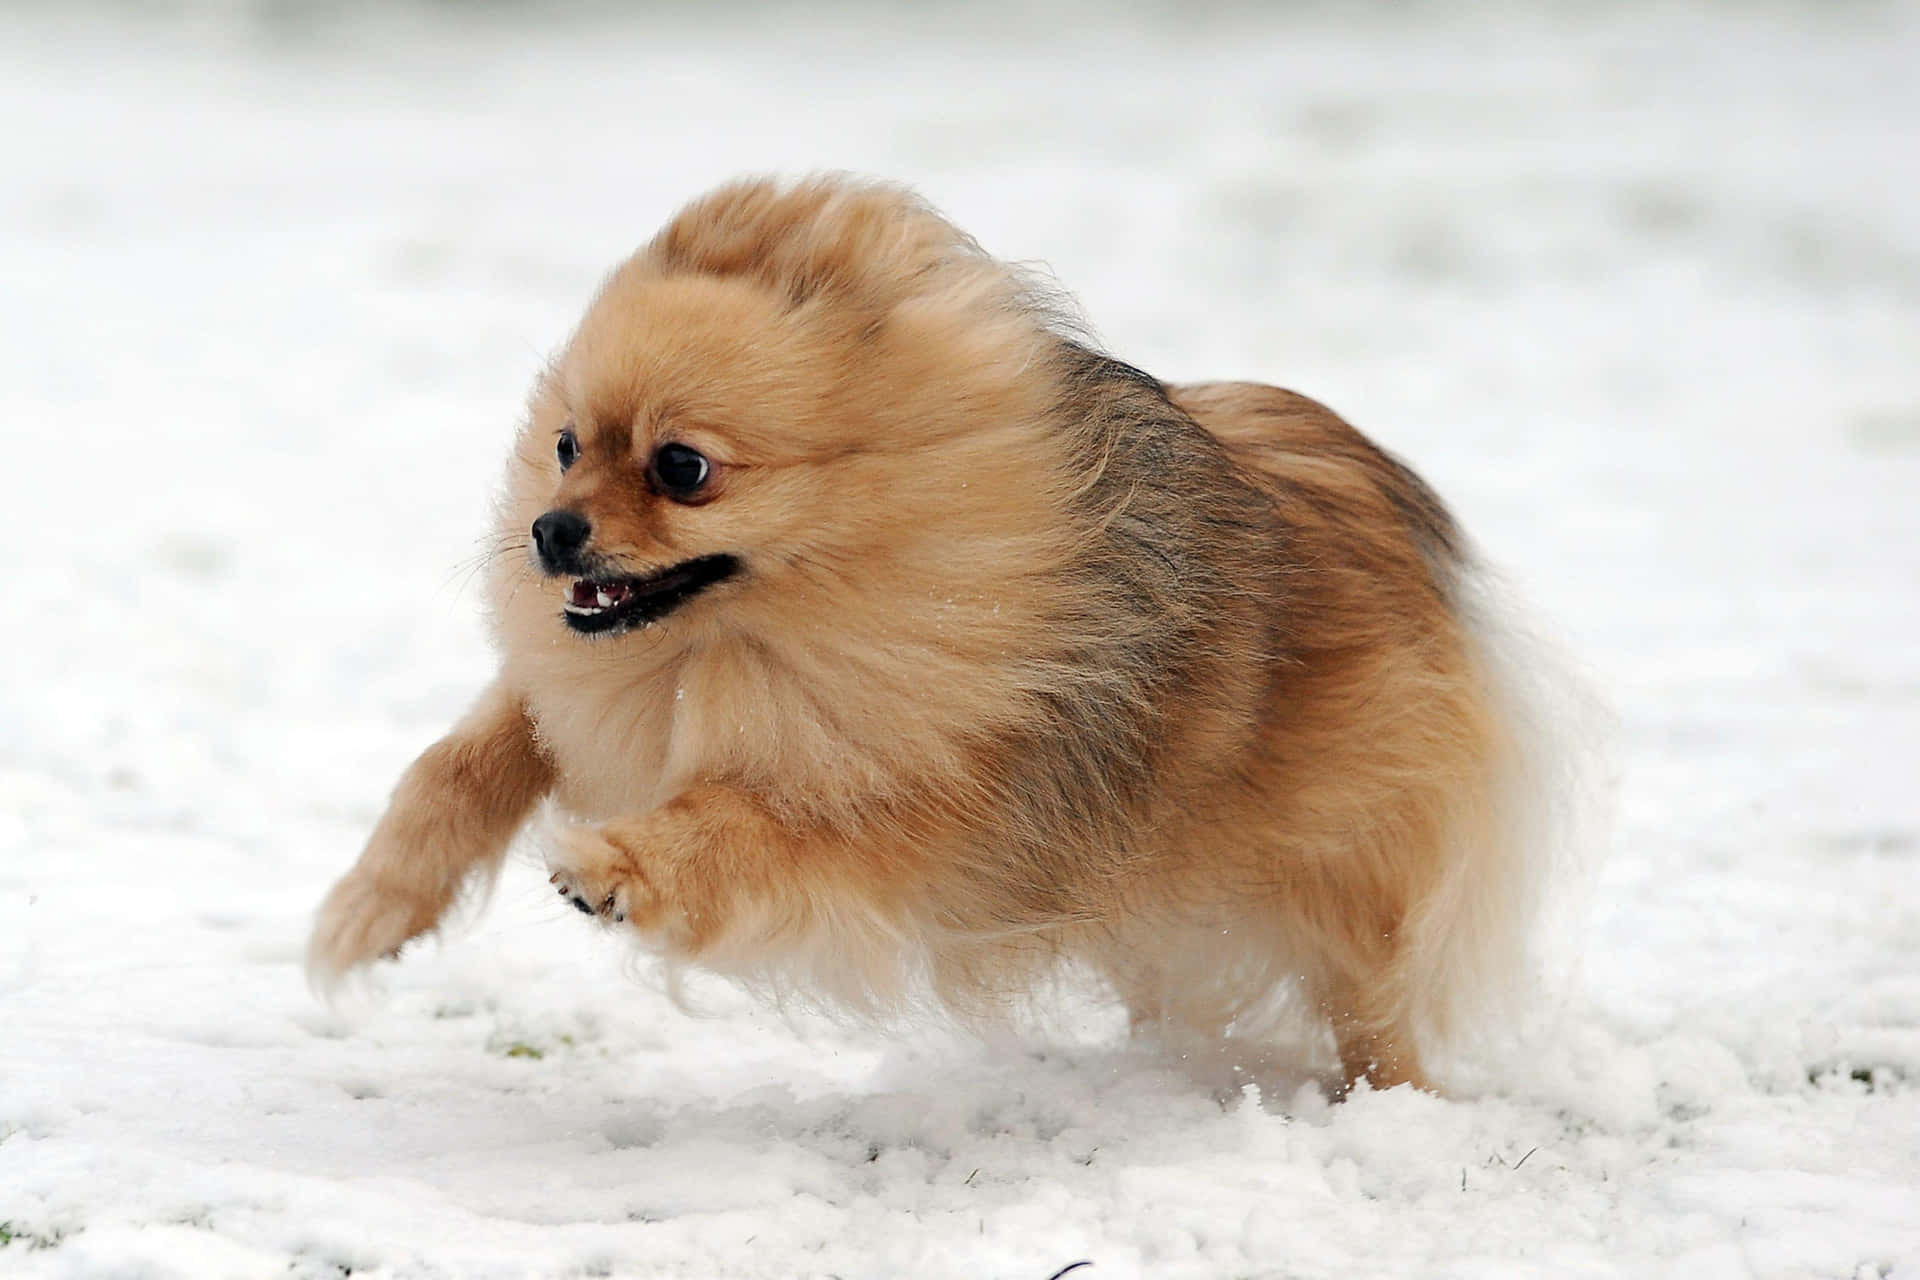 Imagende Un Pomerania Corriendo En La Nieve.